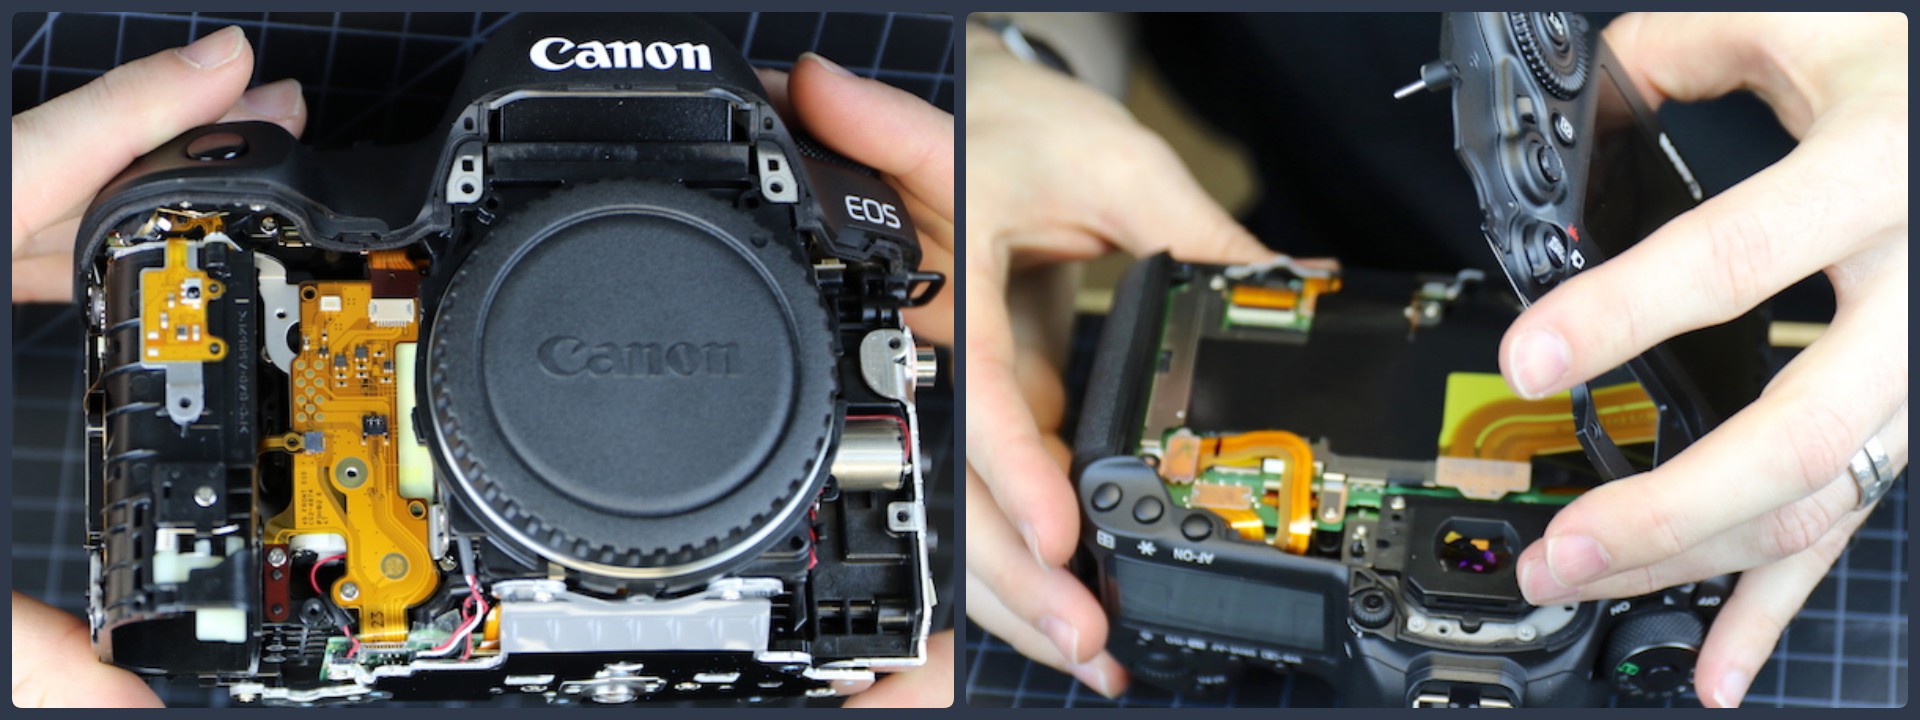 Tháo máy Canon 5D mark IV: Cấu trúc phức tạp hơn, chắc chắn hơn 5D mark III